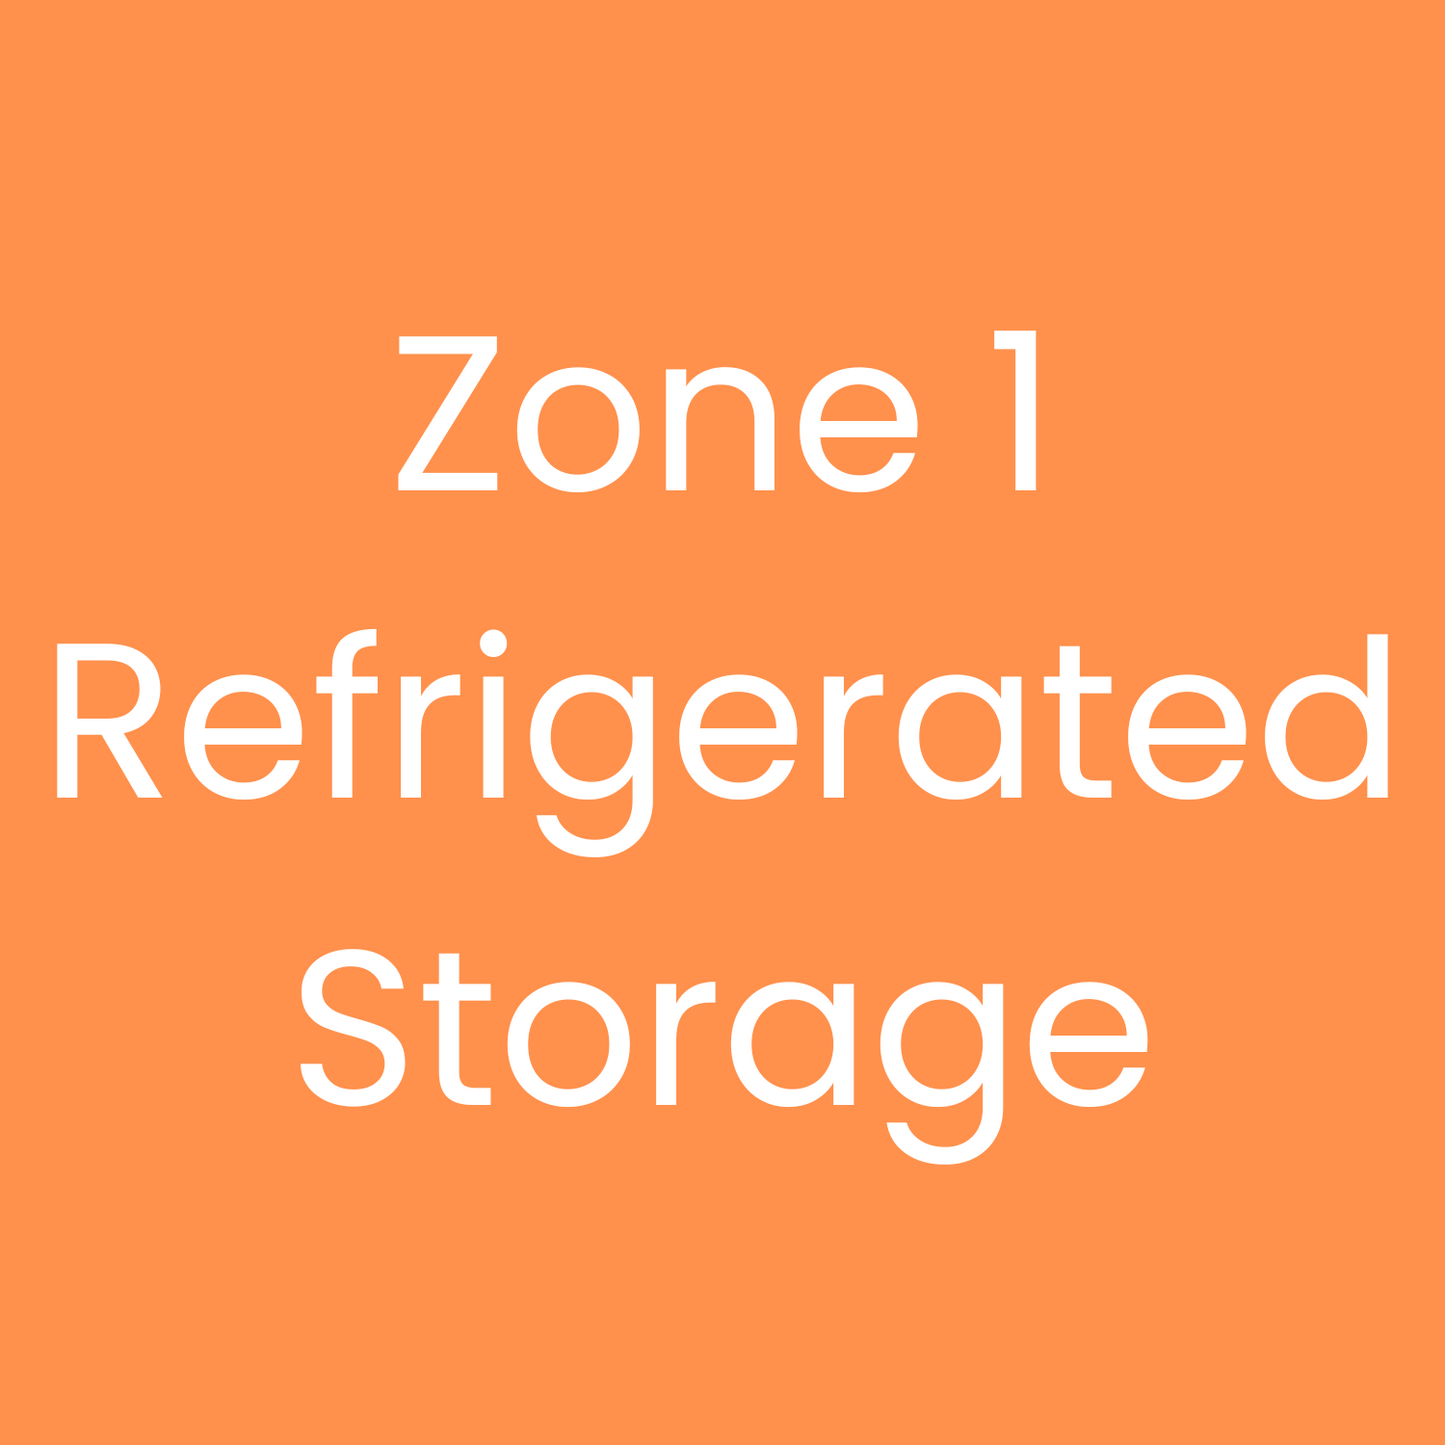 Zone 1 Refrigerated Storage